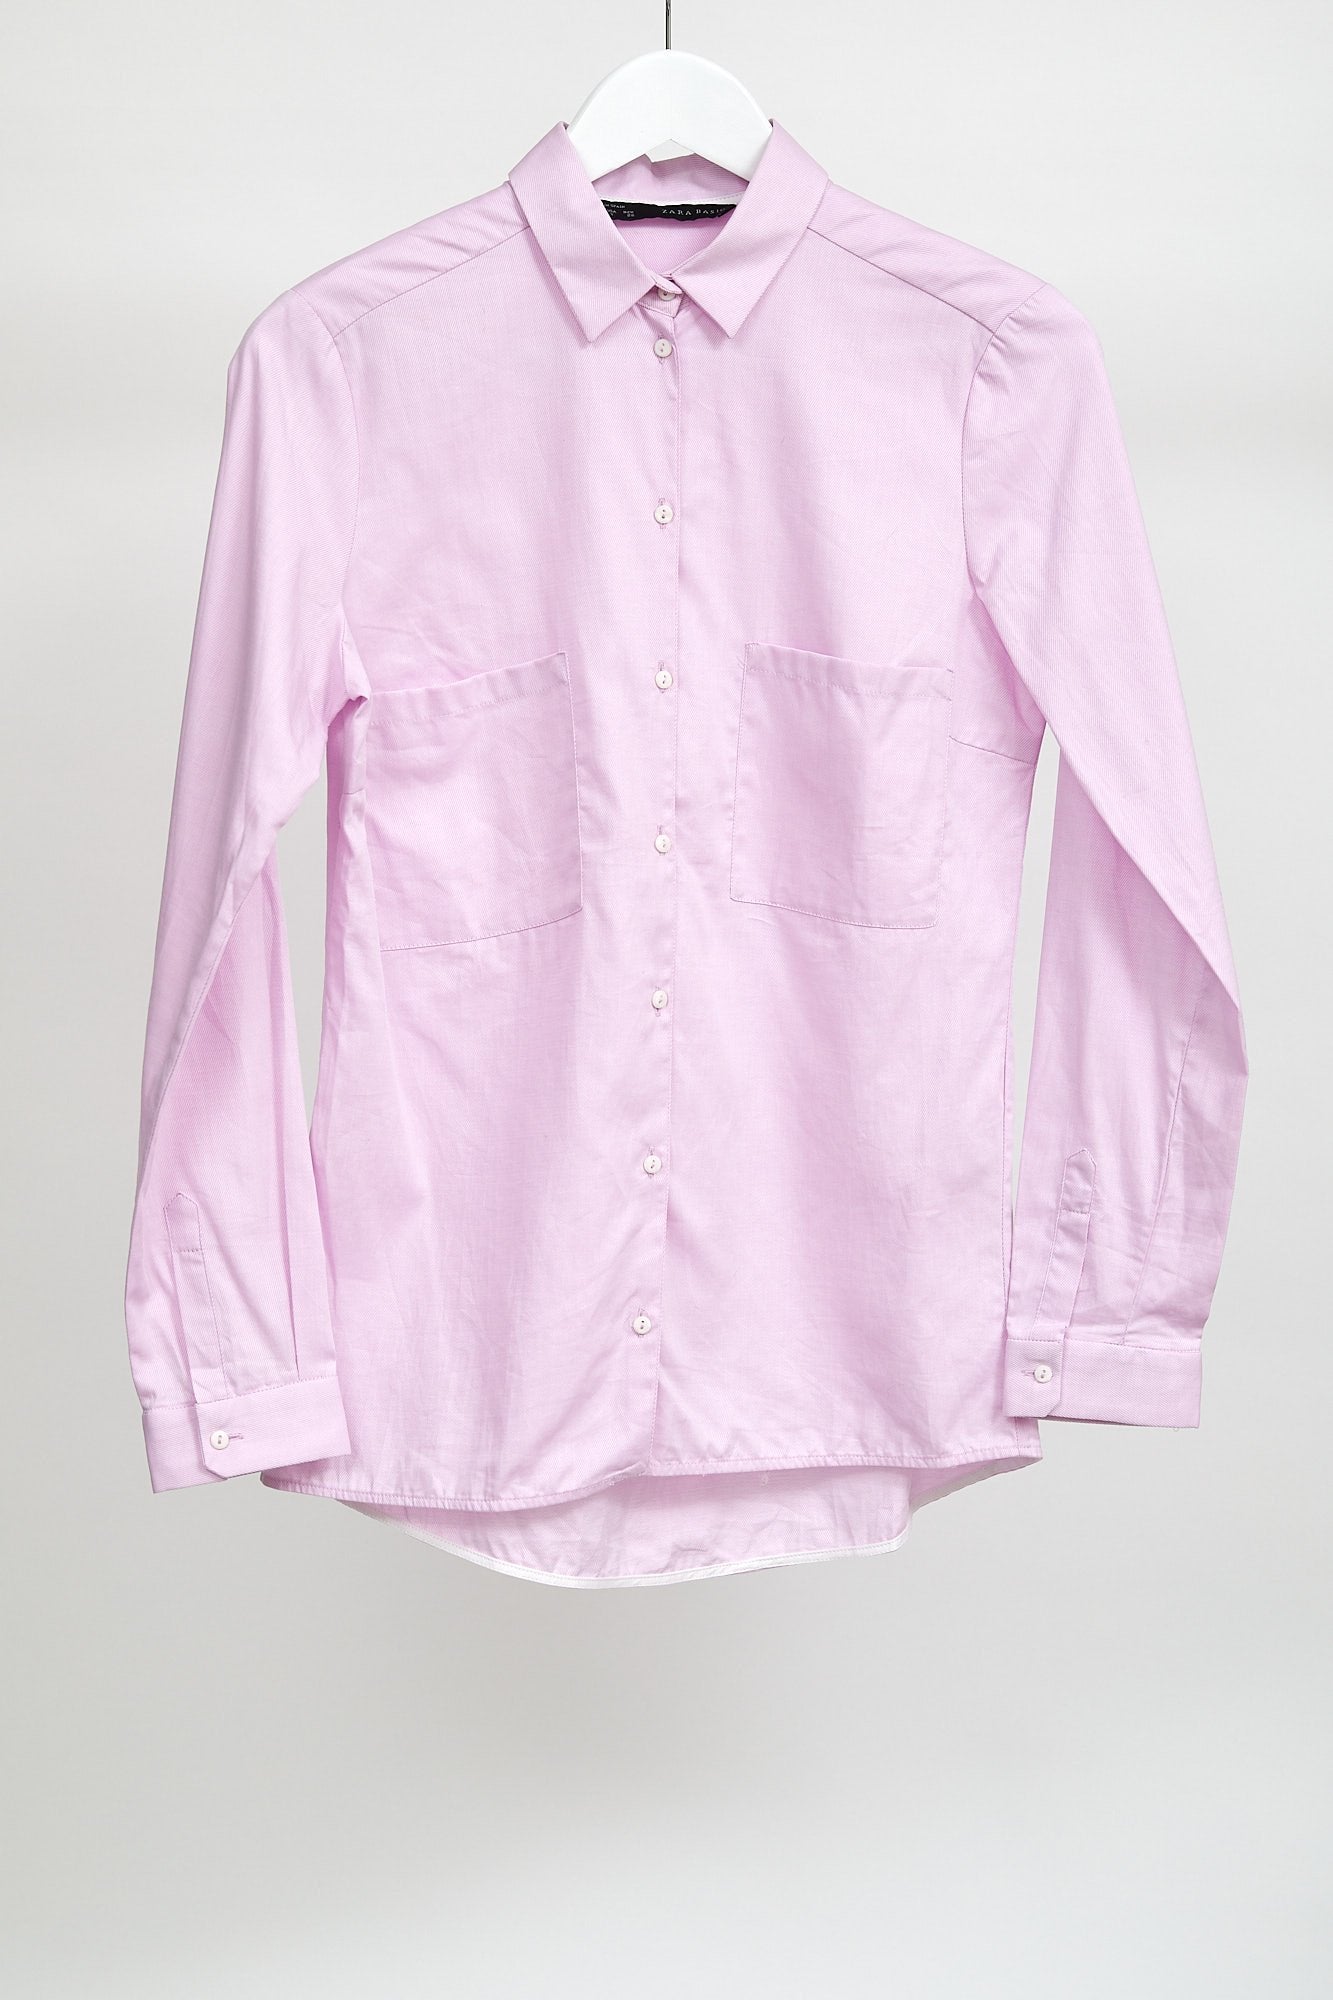 Womens Zara Pink Shirt: Size Small